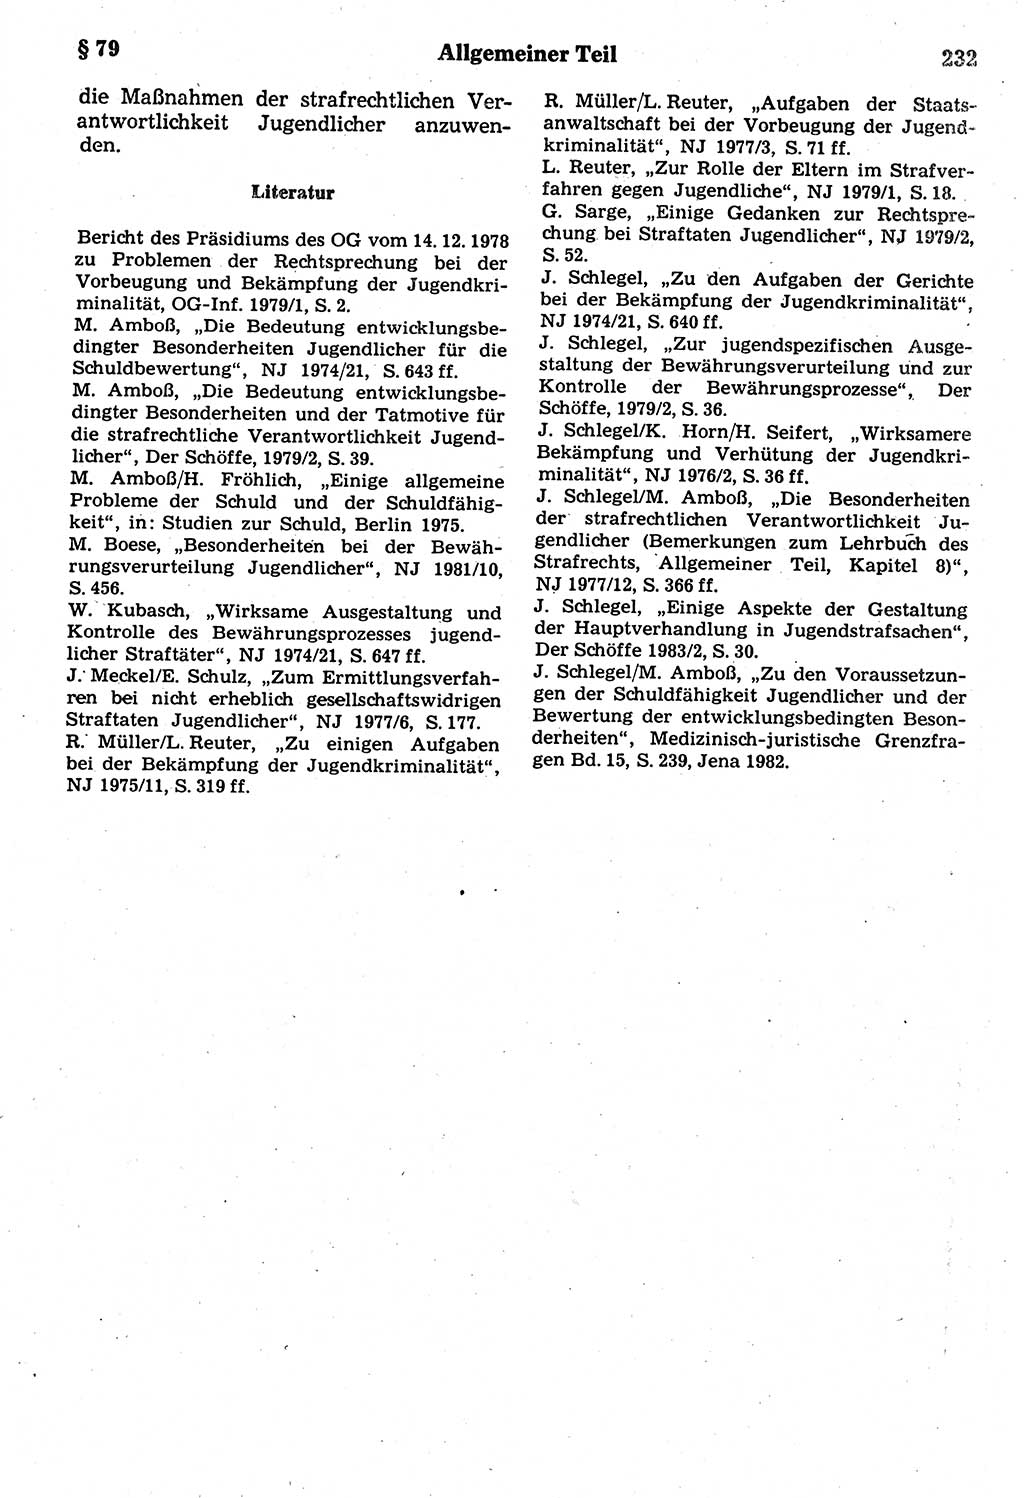 Strafrecht der Deutschen Demokratischen Republik (DDR), Kommentar zum Strafgesetzbuch (StGB) 1987, Seite 232 (Strafr. DDR Komm. StGB 1987, S. 232)